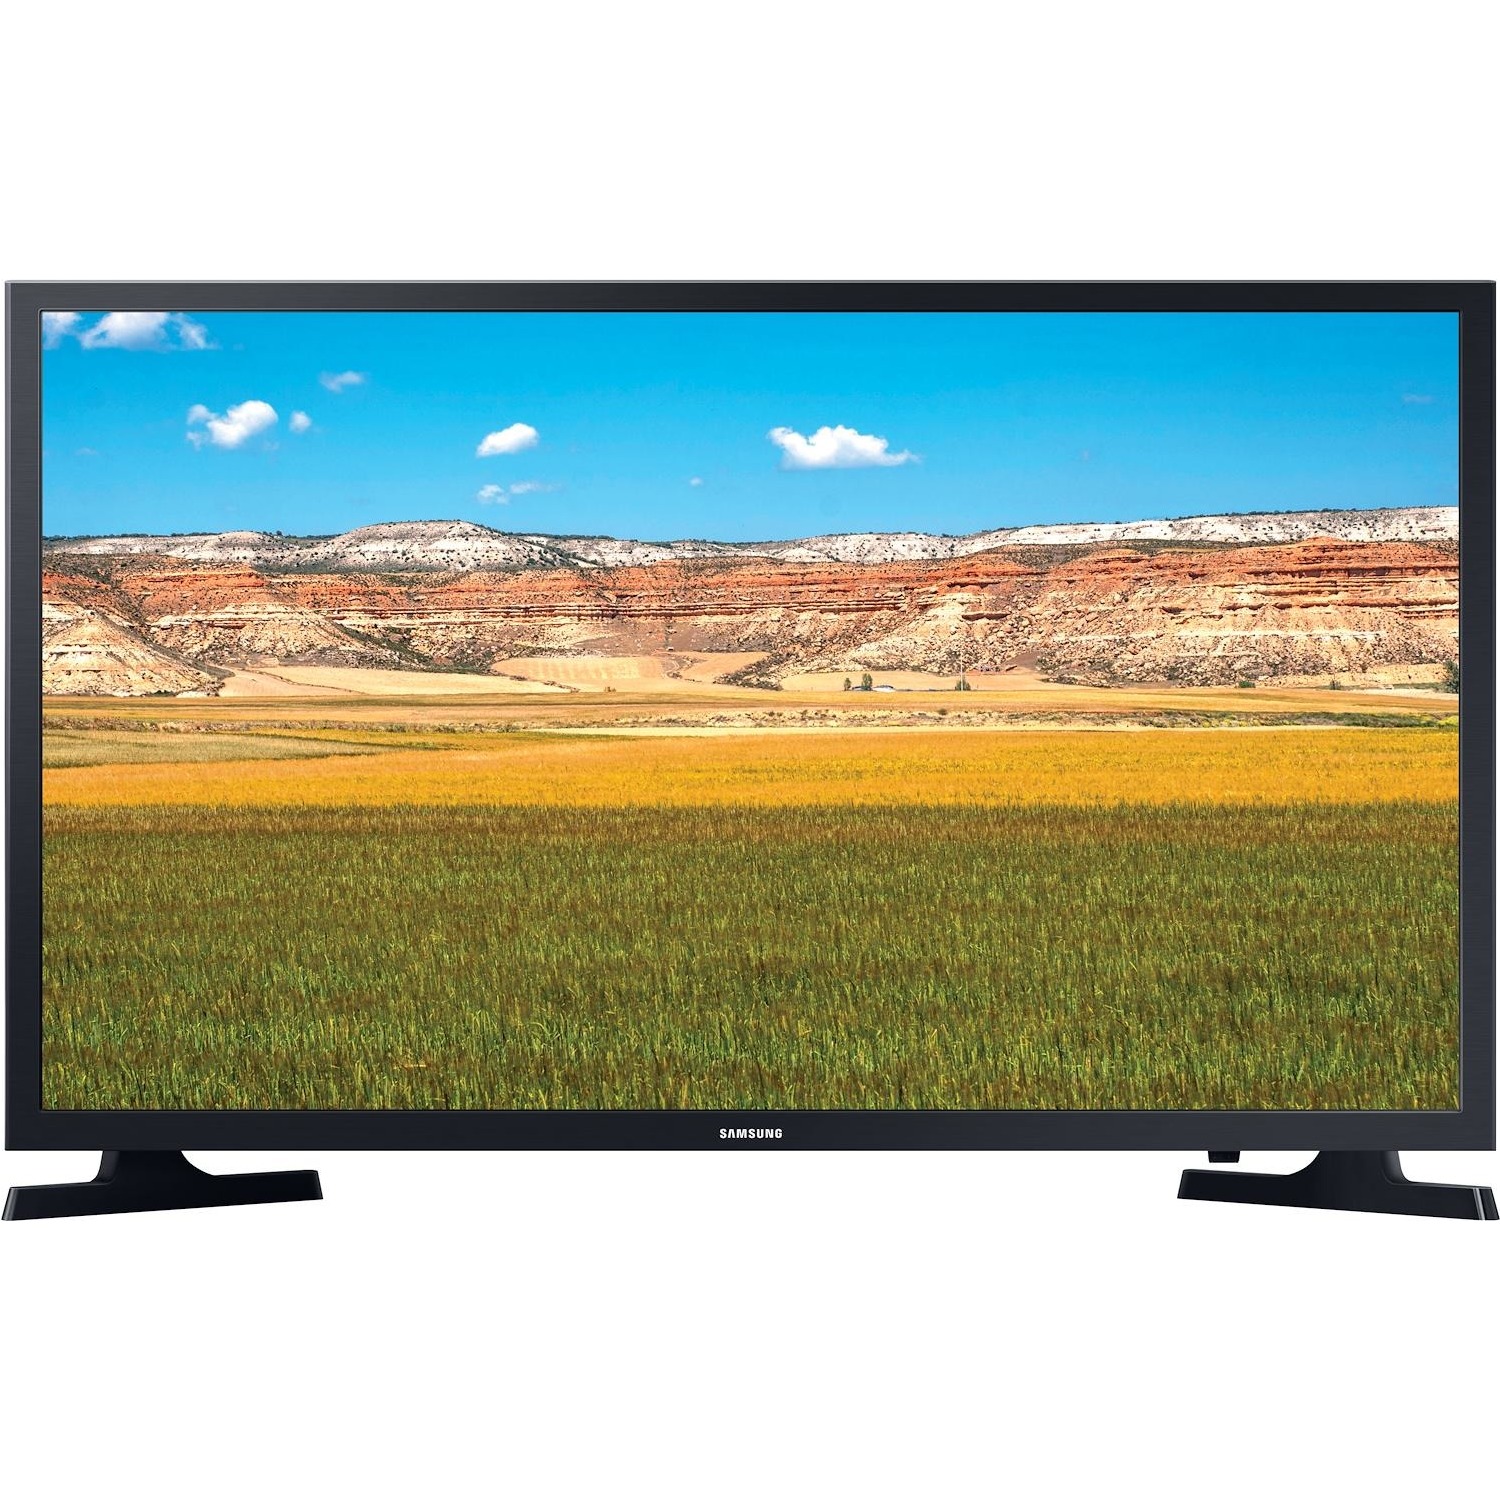 Immagine per TV LED Smart Samsung 32T4300 da DIMOStore